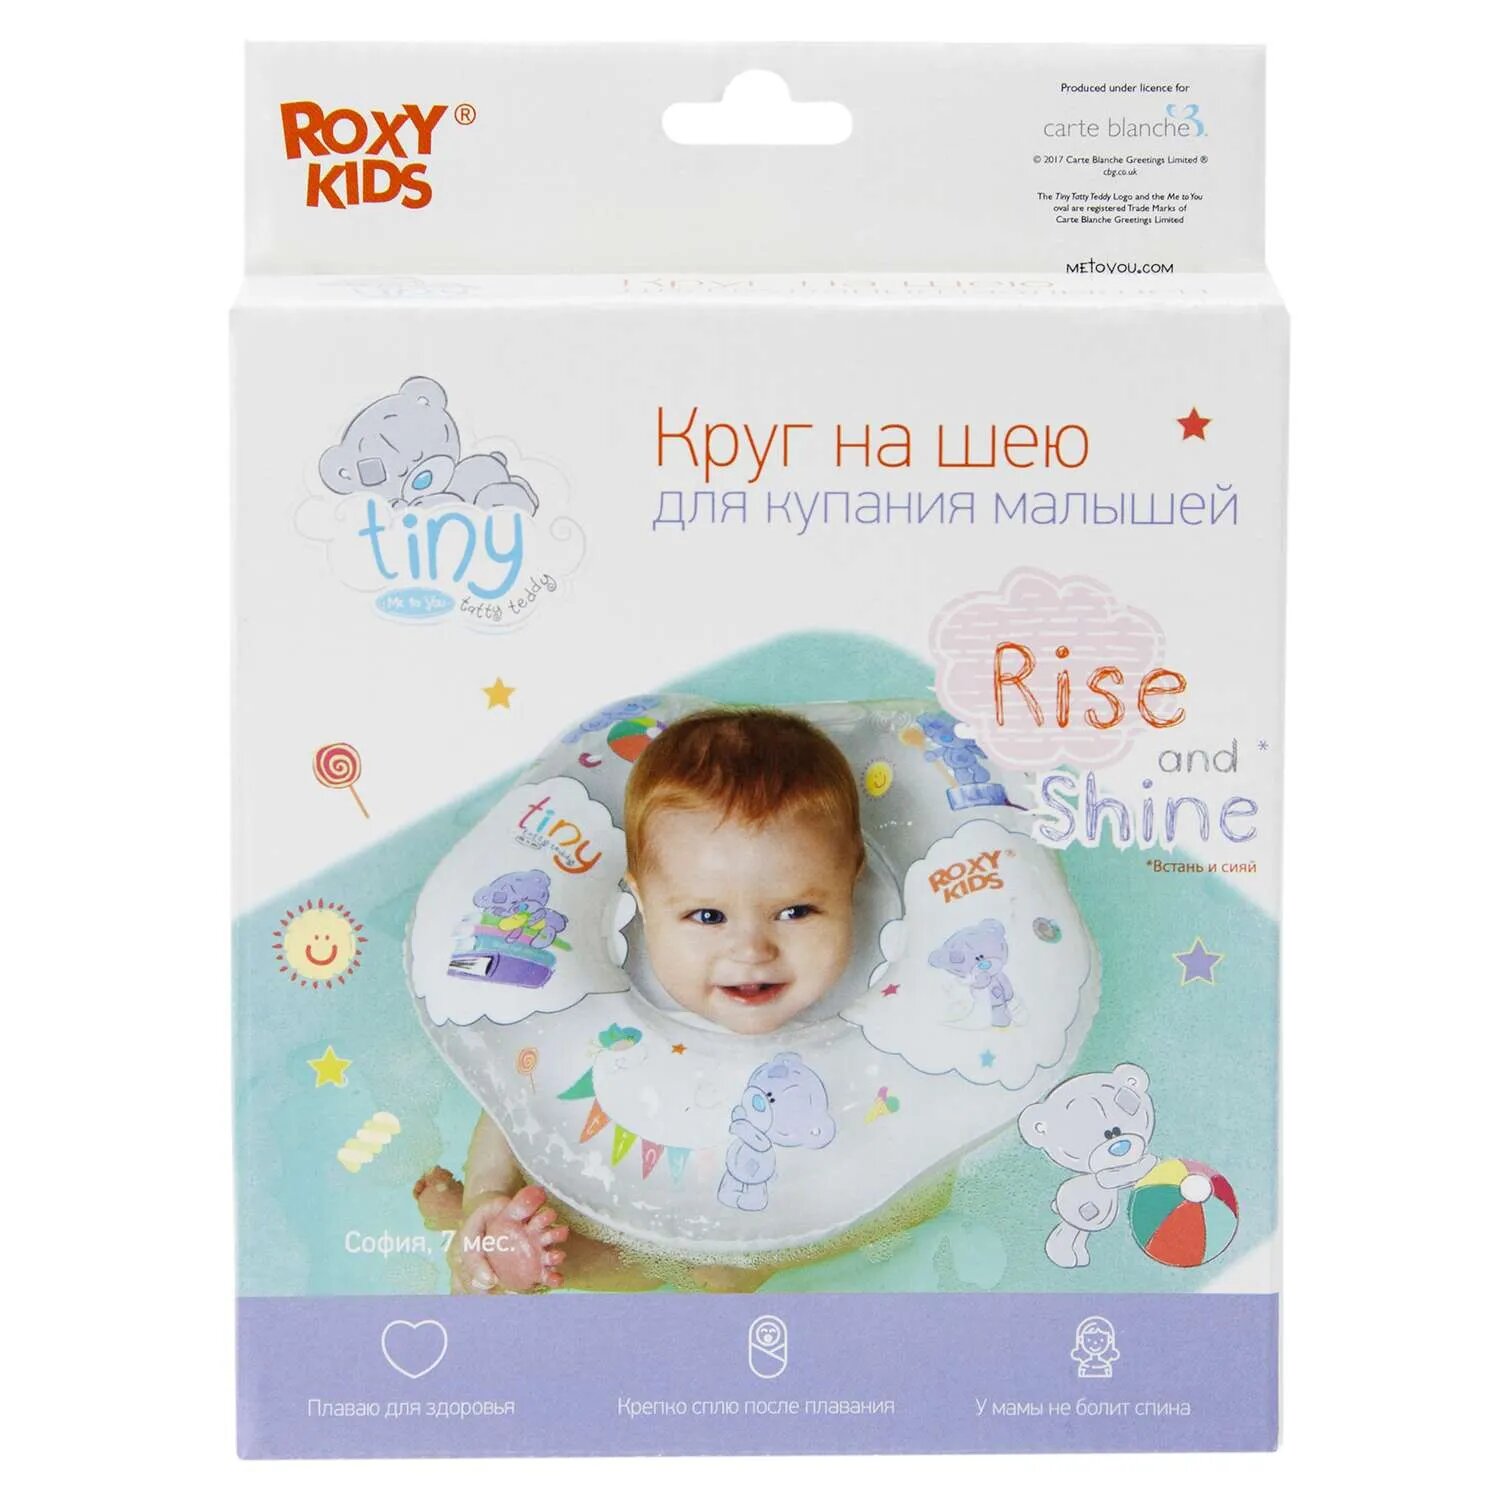 Круг на шею ROXY-KIDS Kids для купания малышей надувной Teddy Everyday